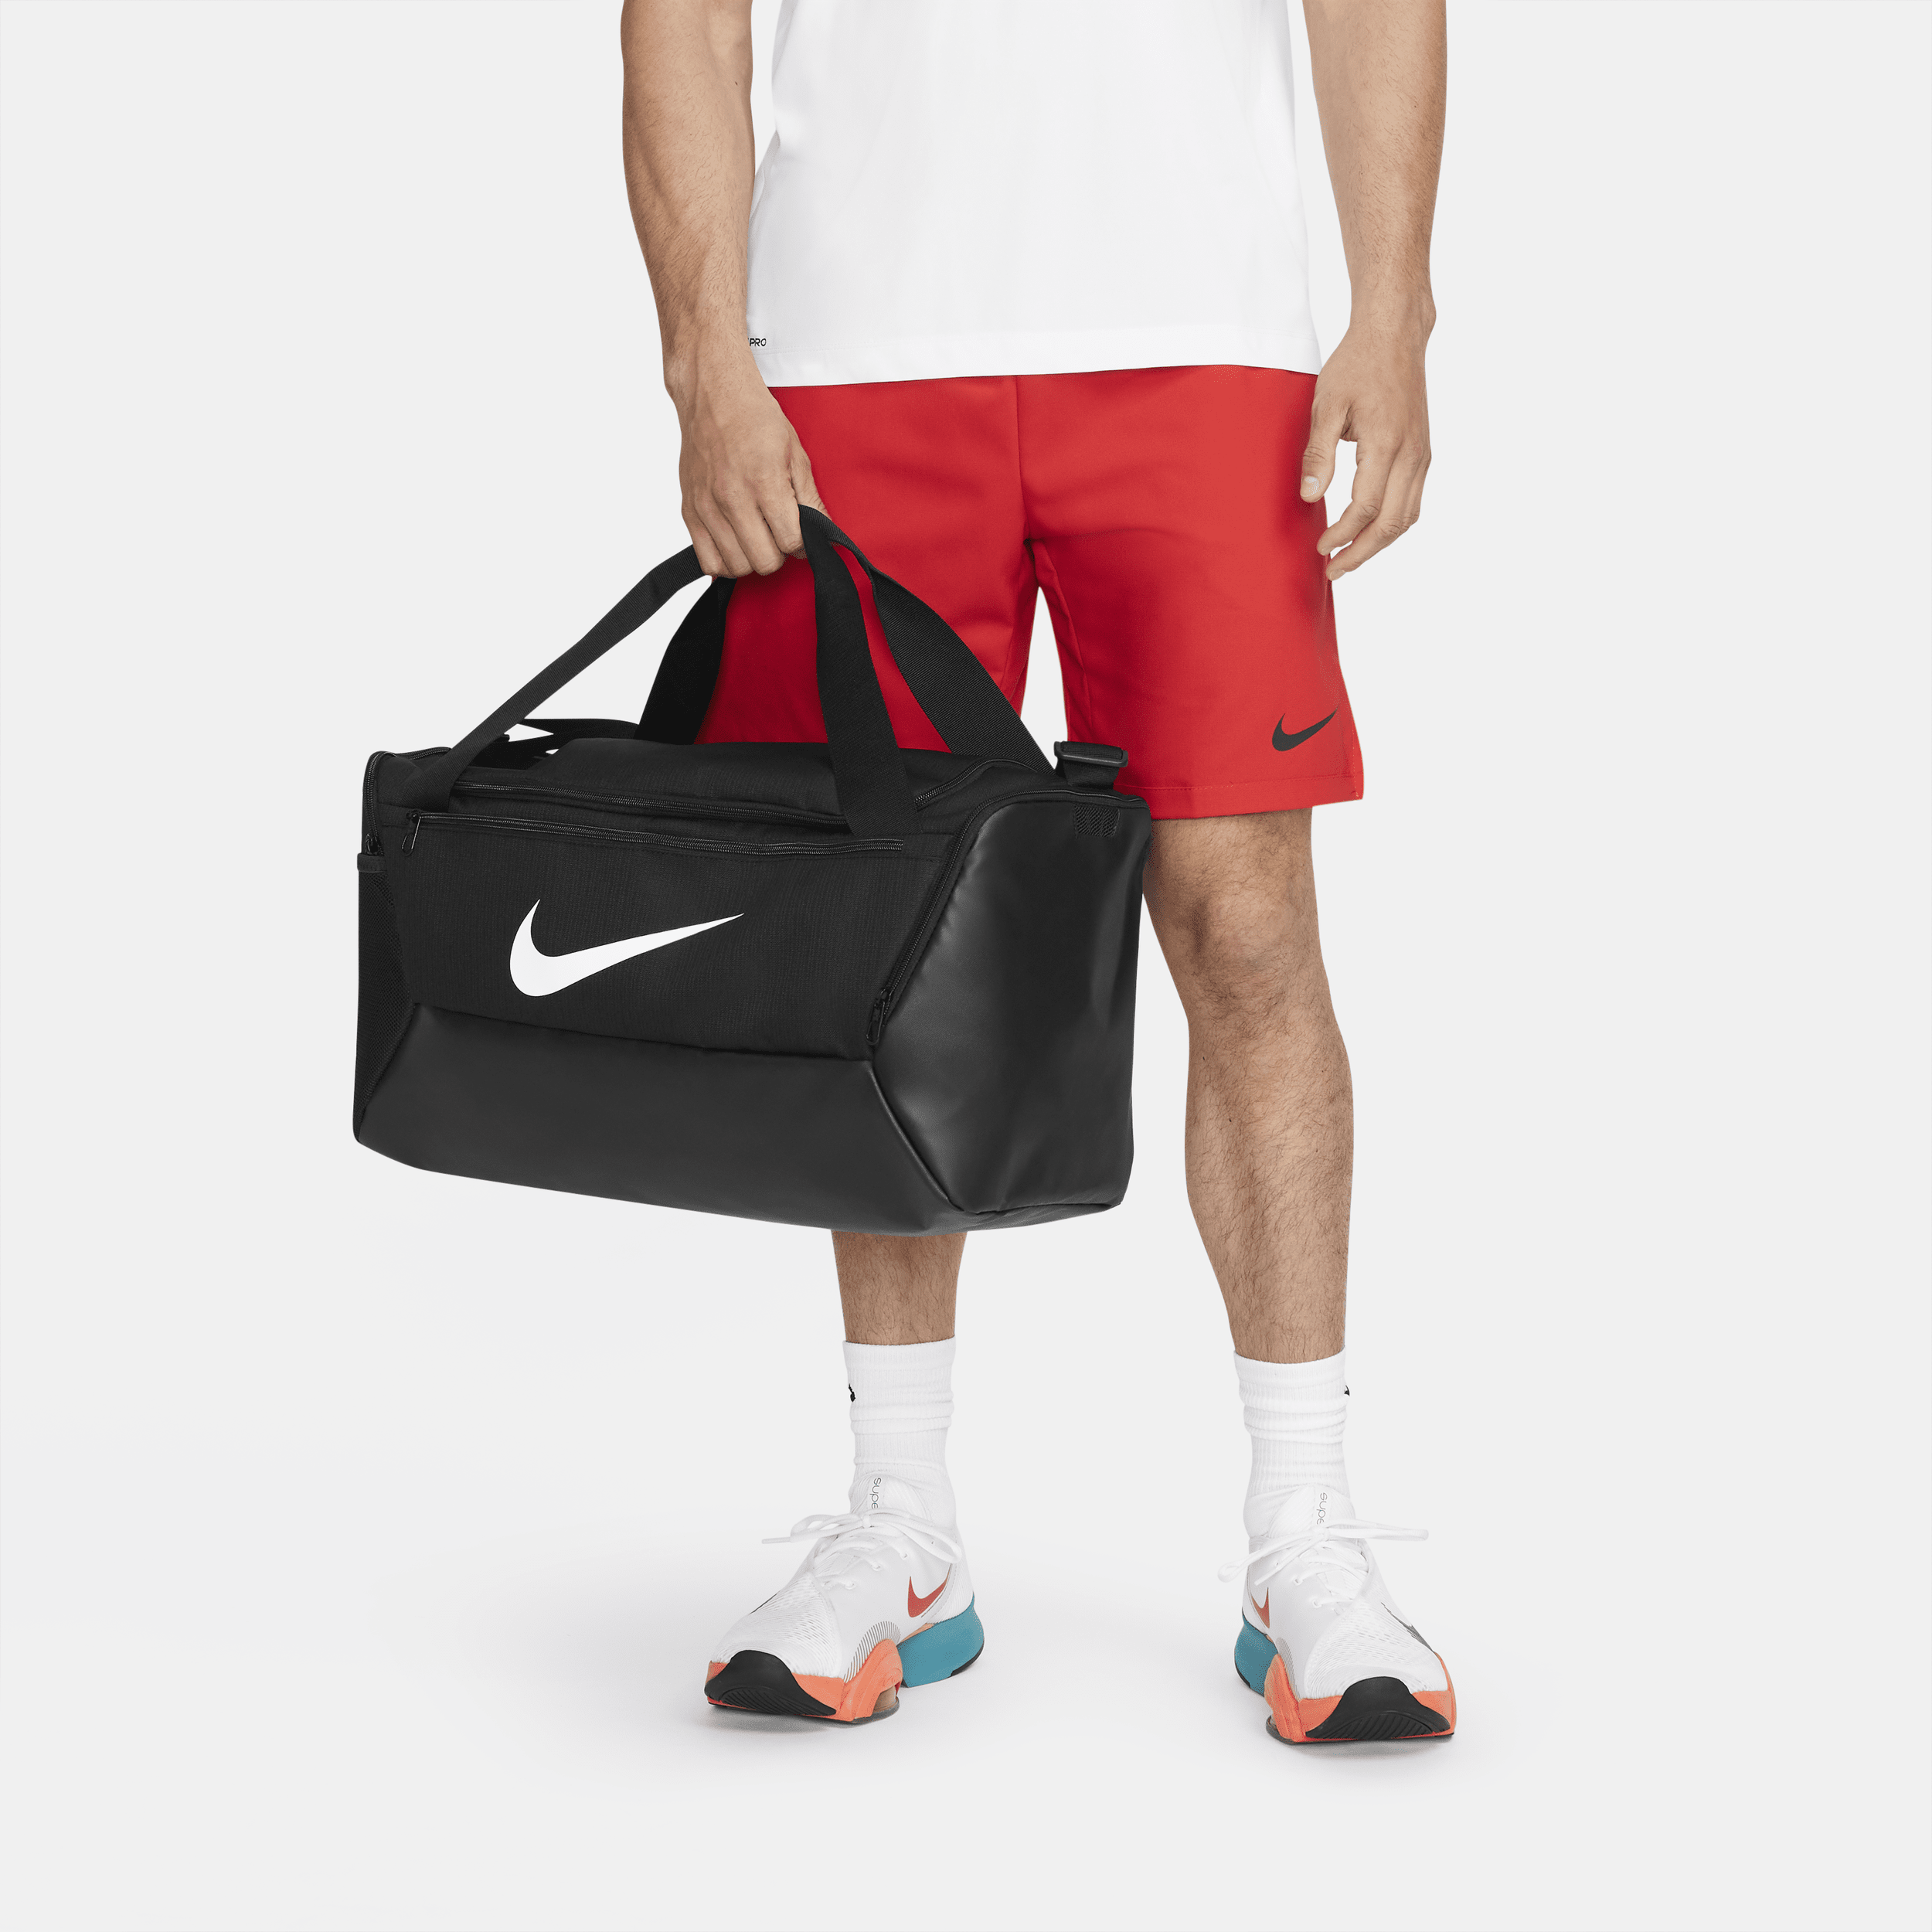 Bolsa Nike Brasilia Unissex